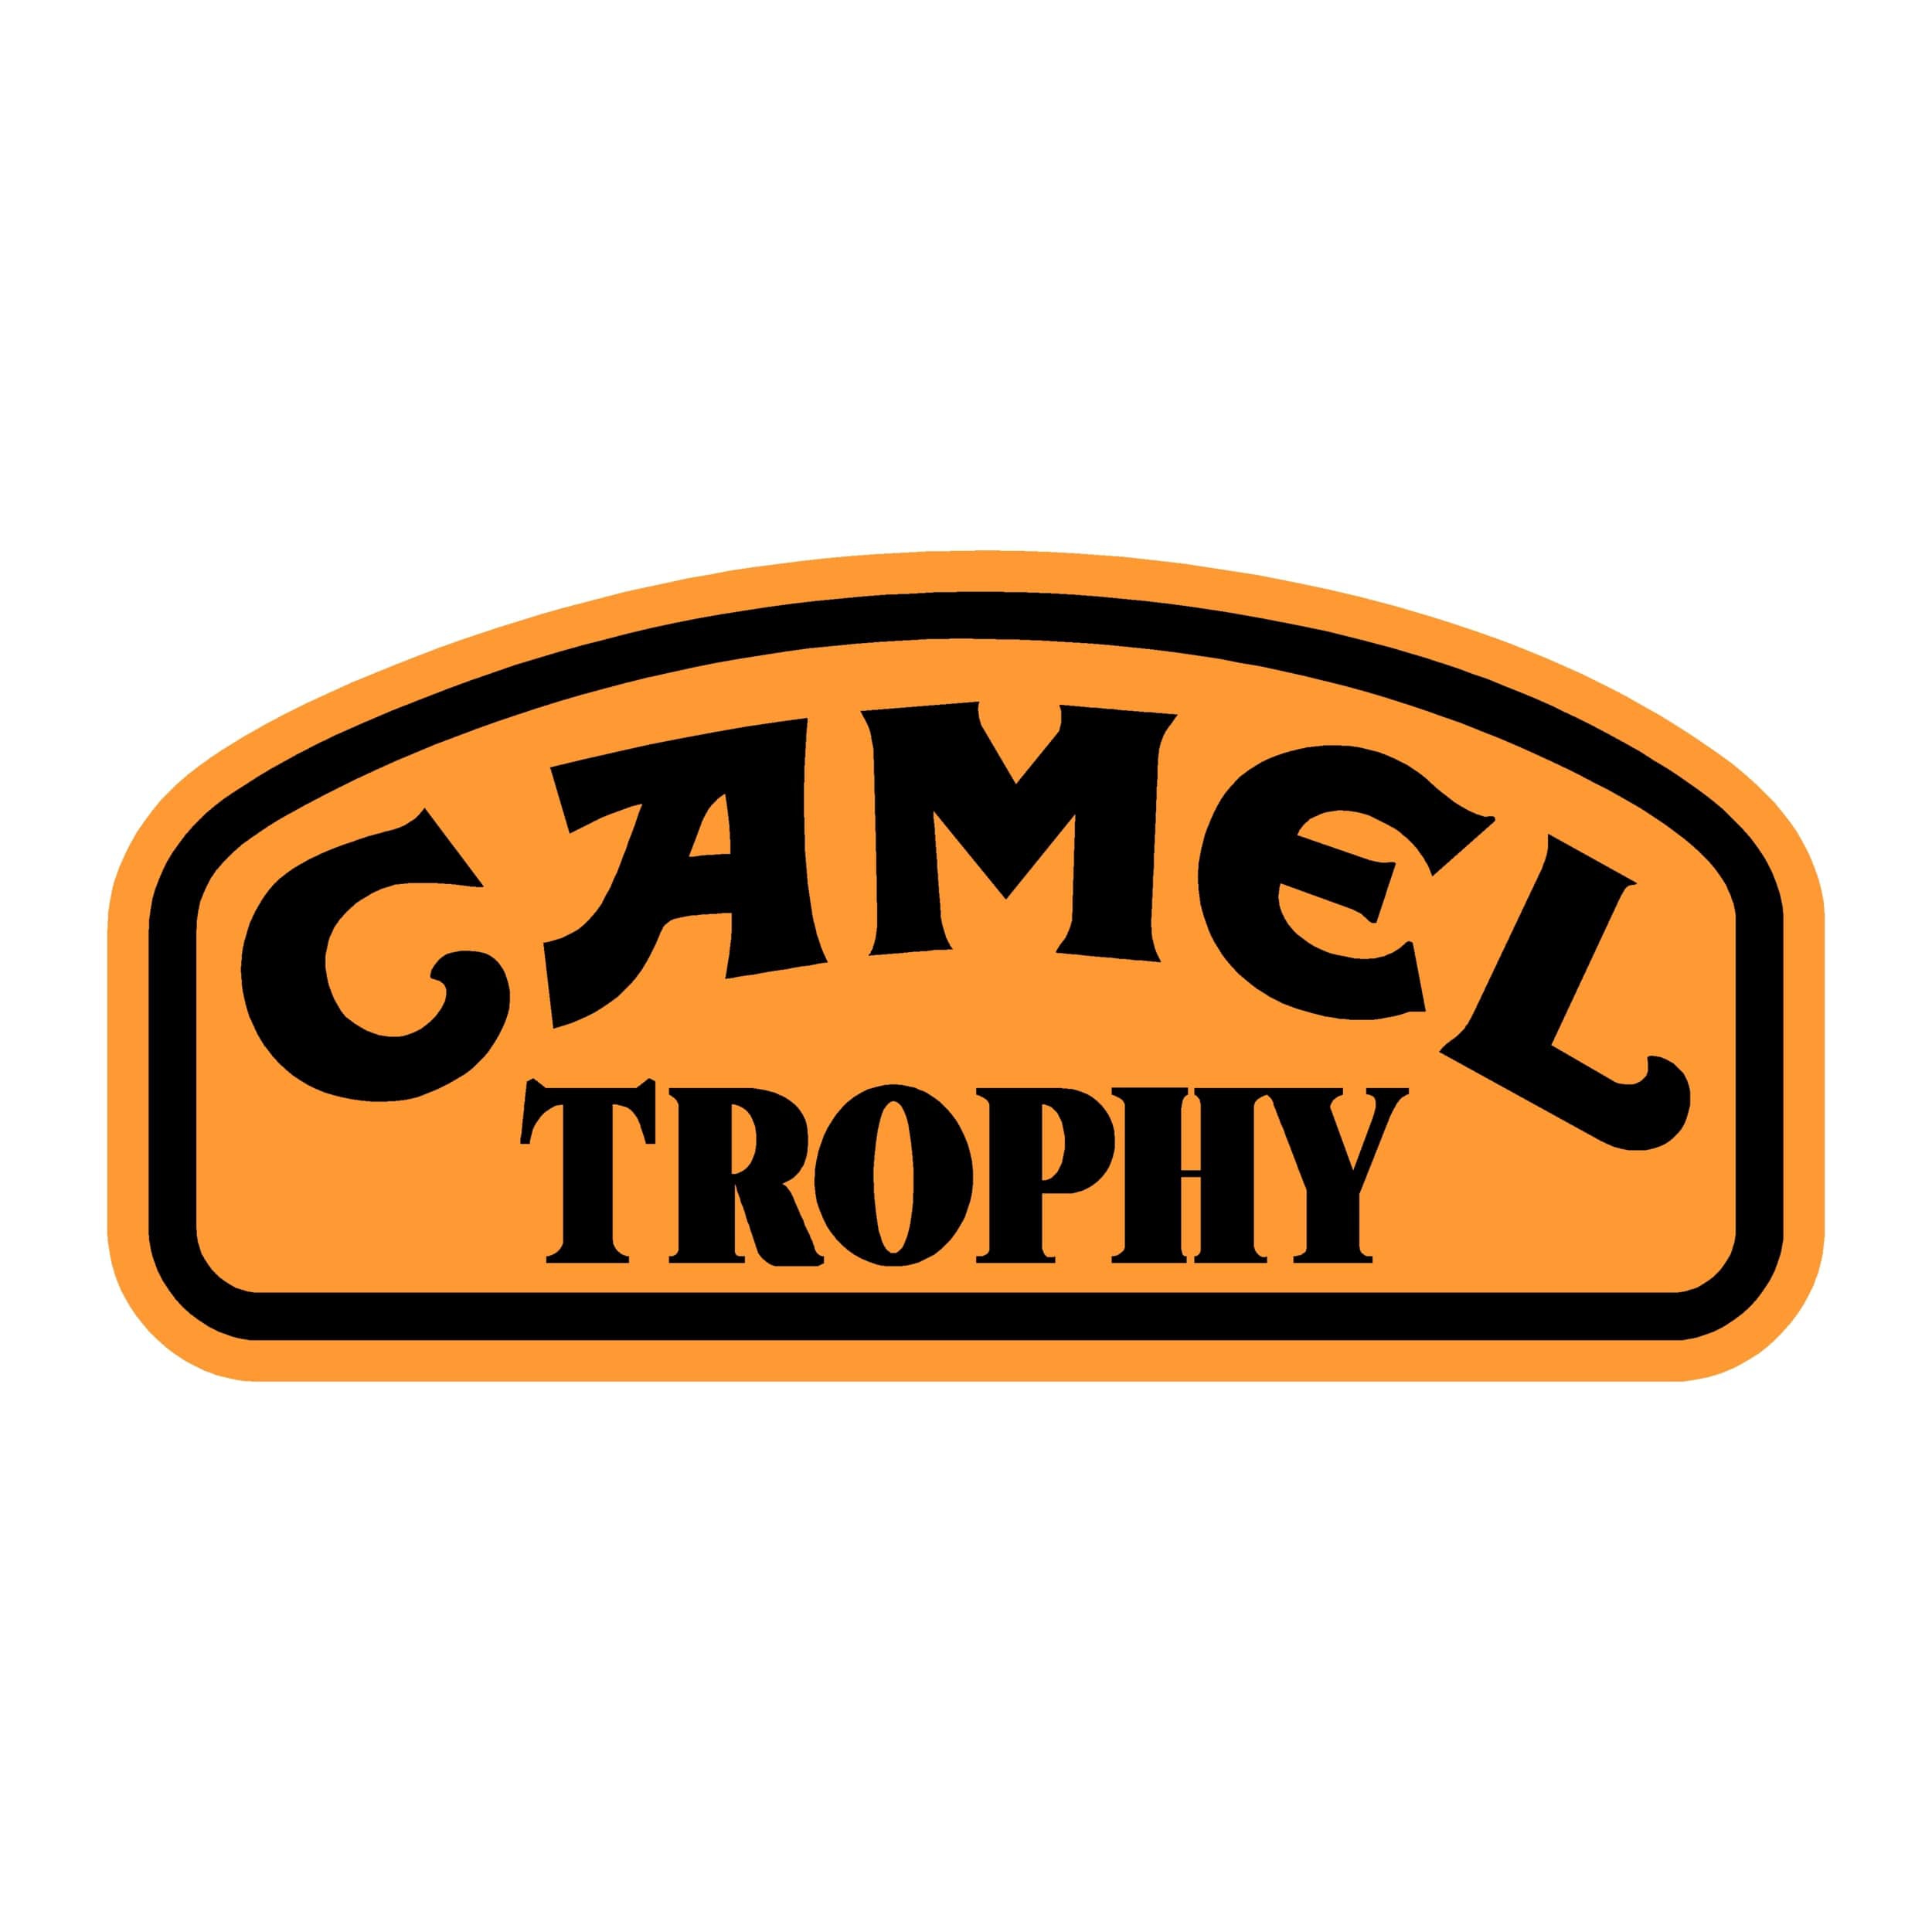 stickers-camel-trophy-ref-2-dakar-land-rover-4x4-tout-terrain-rallye-competition-pneu-tuning-amortisseur-autocollant-fffsa-min